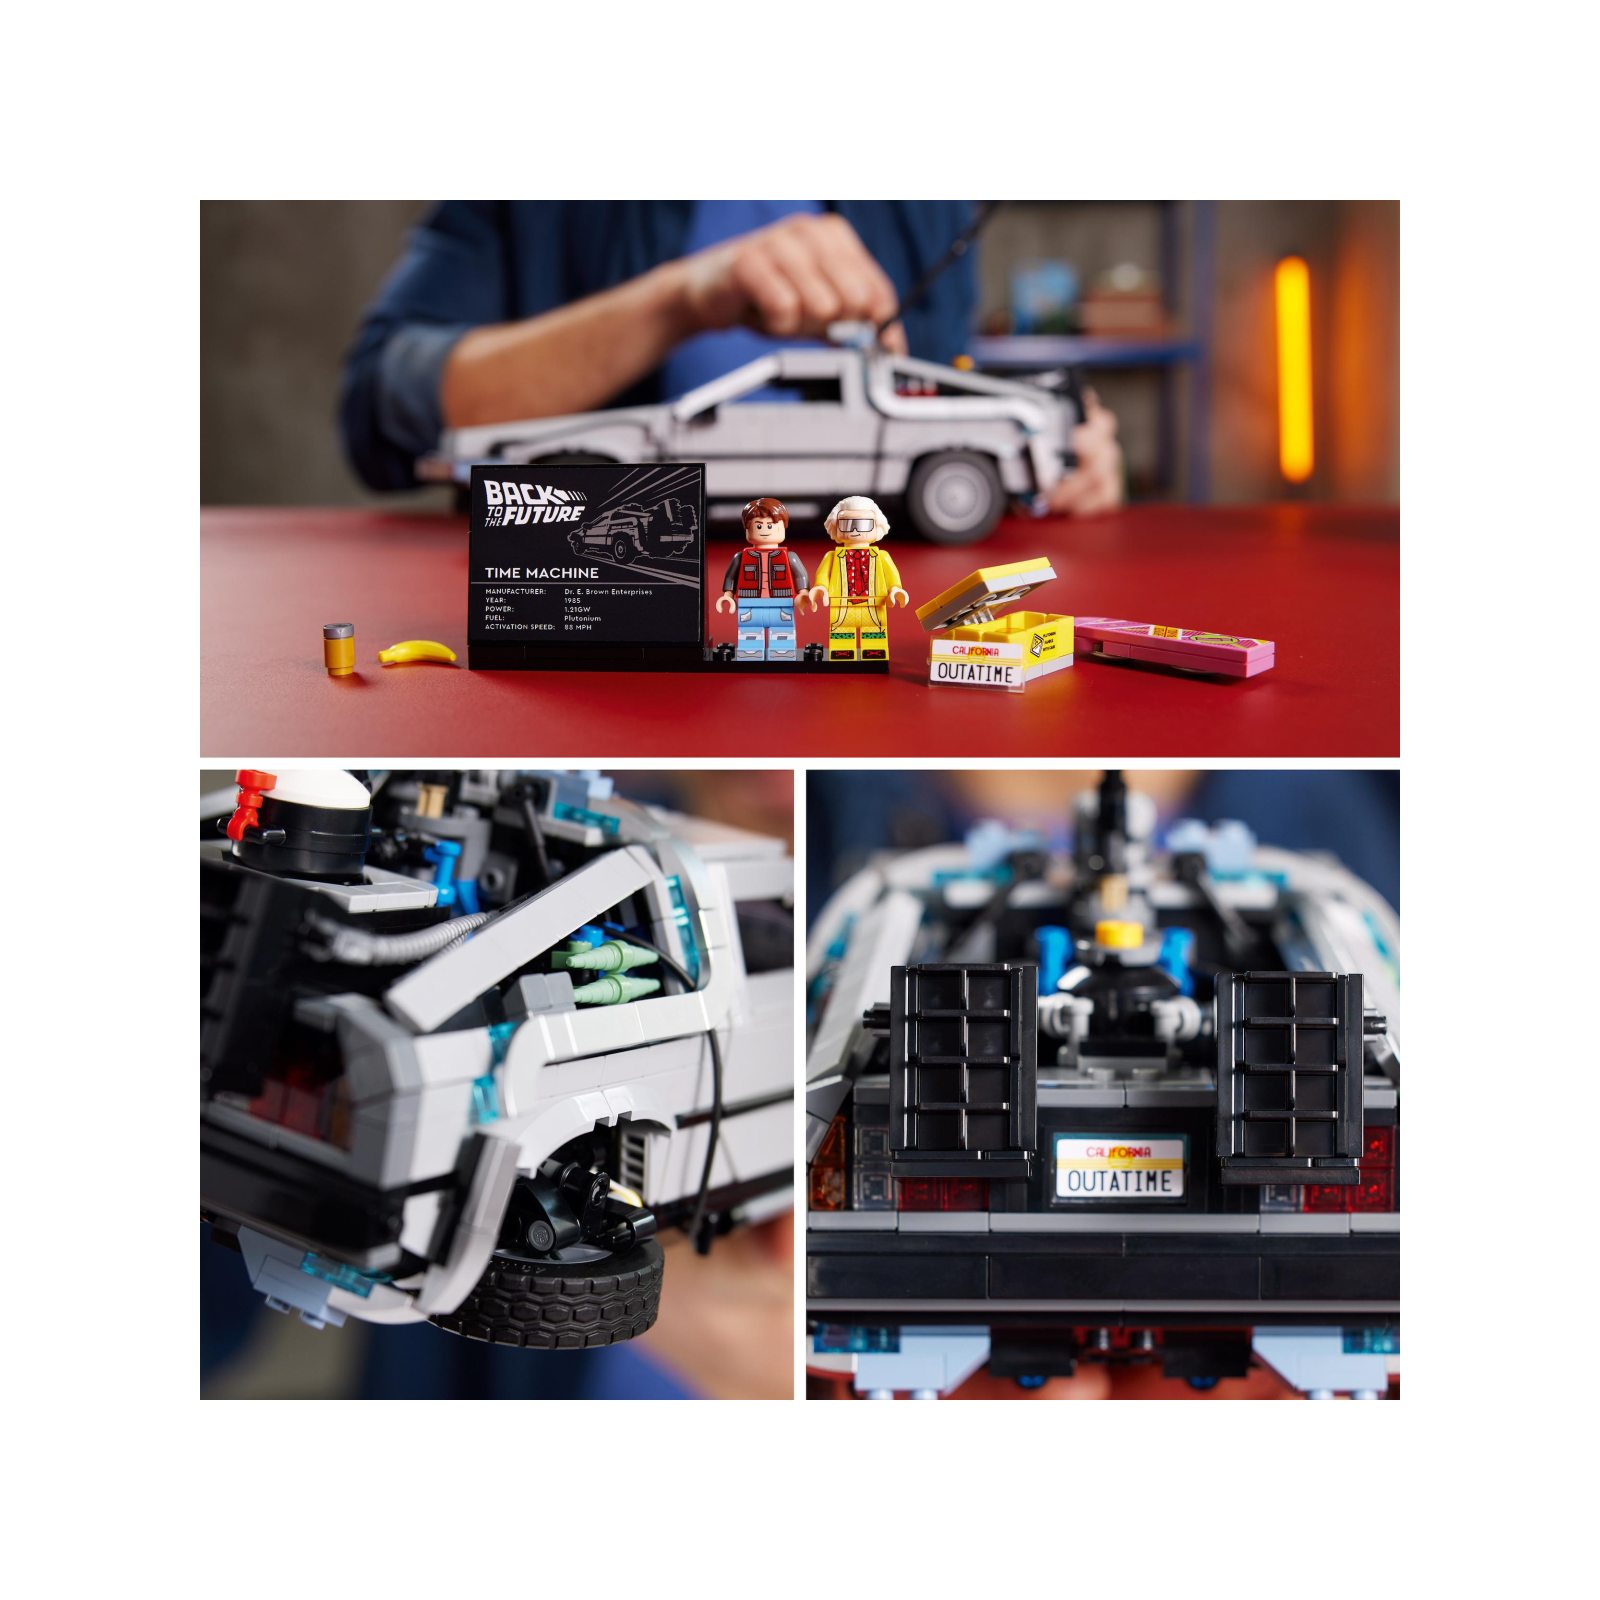 Lego icons 10300 macchina del tempo ritorno al futuro, set modellino delorean da costruire, minifigure di doc e marty mcfly - LEGO ICONS